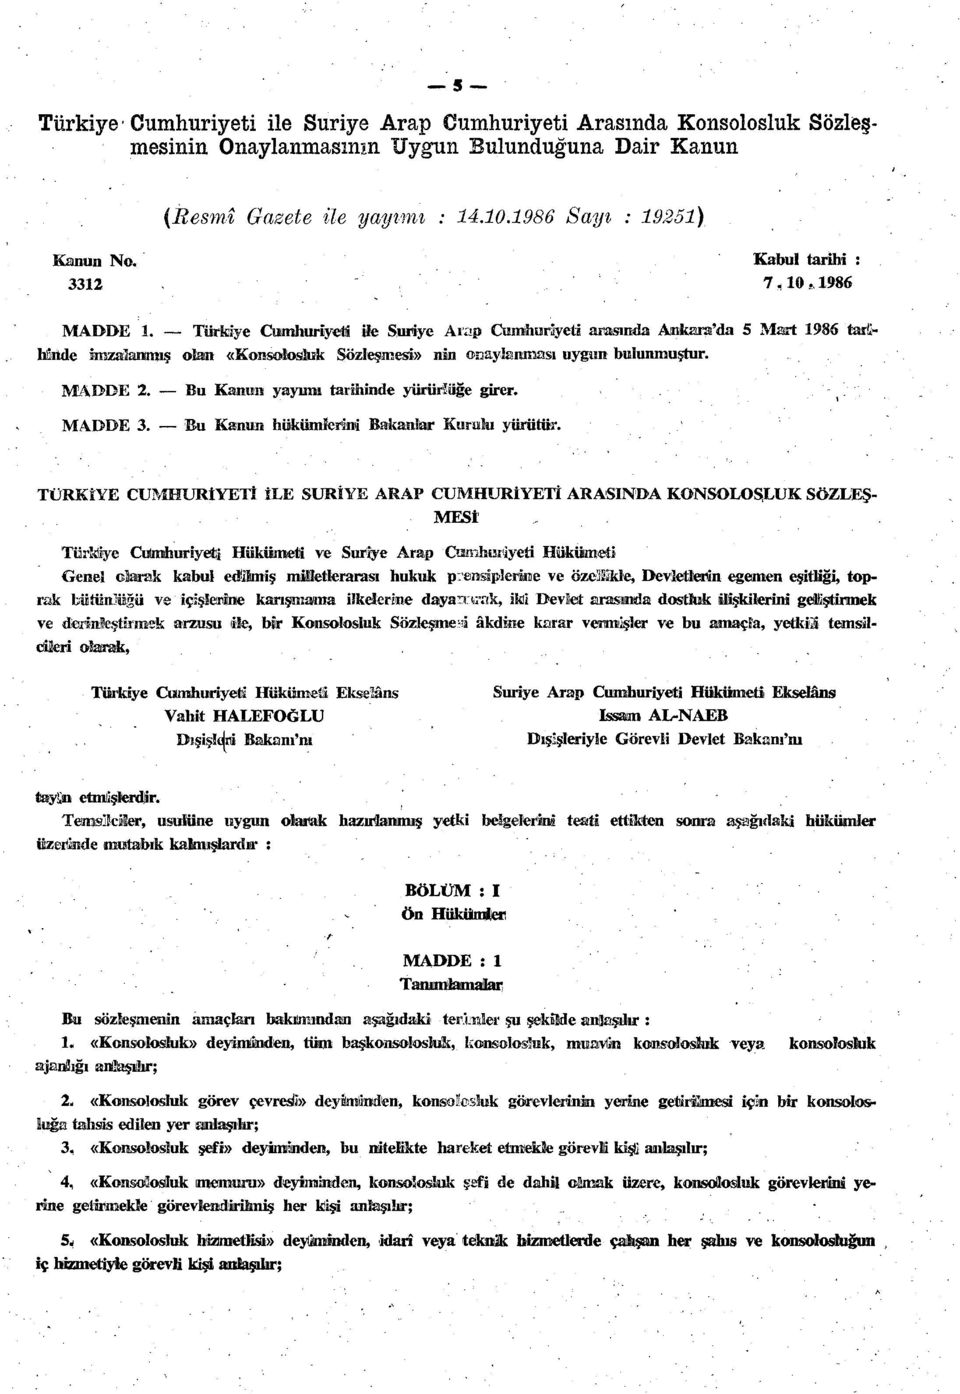 Türkiye Cumhuriyeti ile Suriye Arap Cumhuriyeti arasında Ankara'da 5 Mart 1986 taröhlinde imzalanmış olan «Konsolosluk Sözleşmesi» nin onaylanması uygun bulunmuştur. MADDE 2.